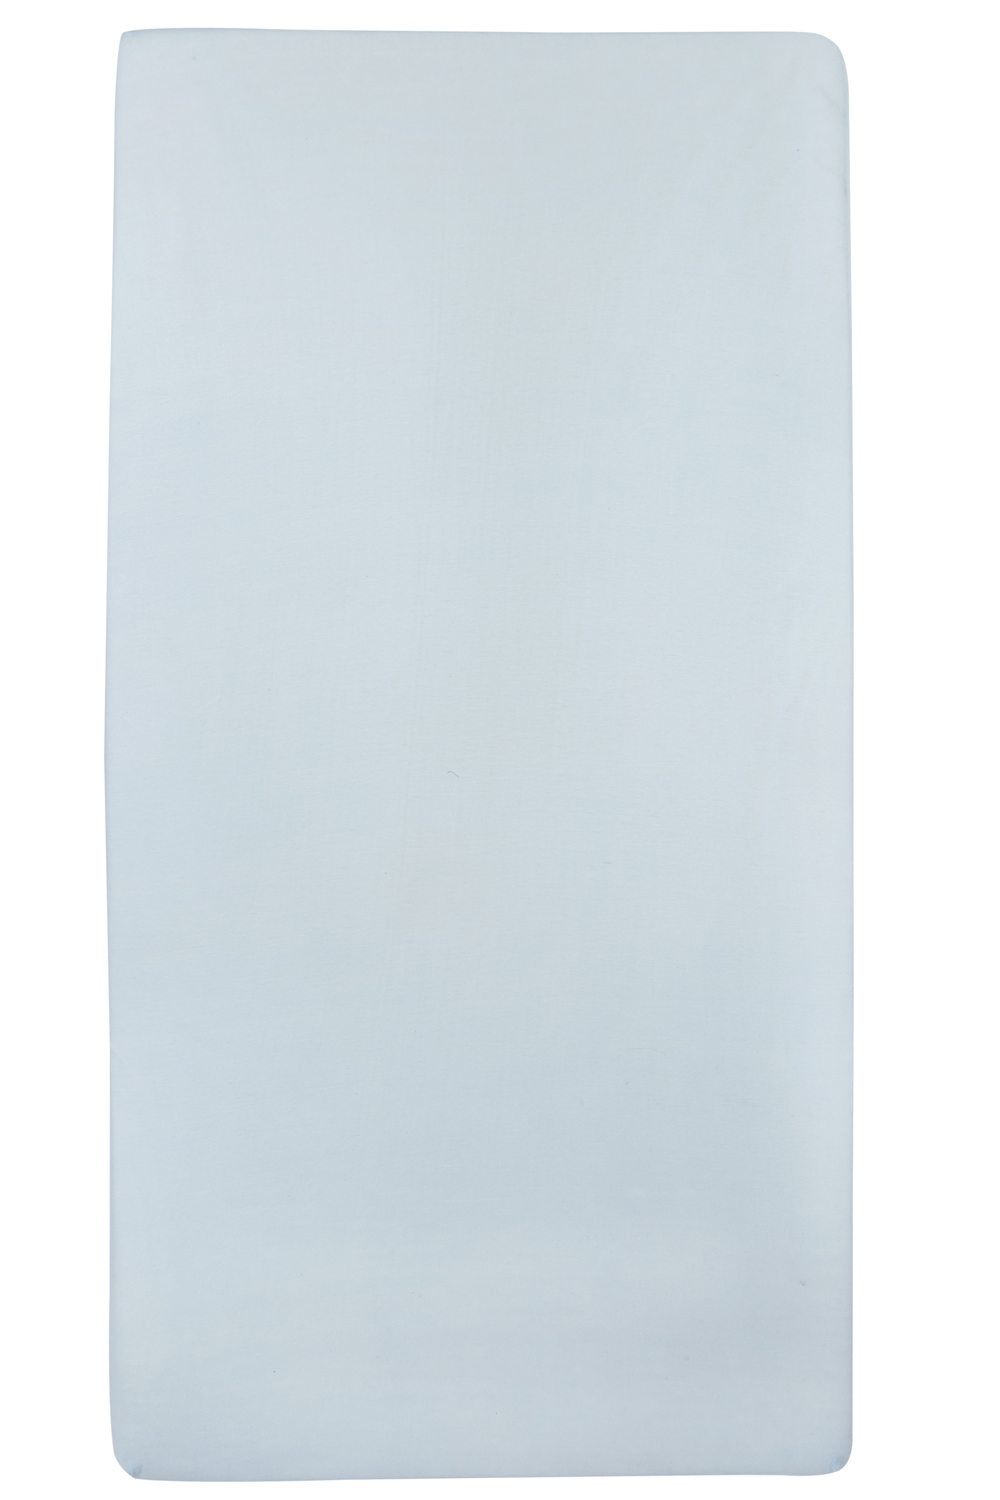 Jersey Hoeslaken - Lichtblauw - 70x140/150cm